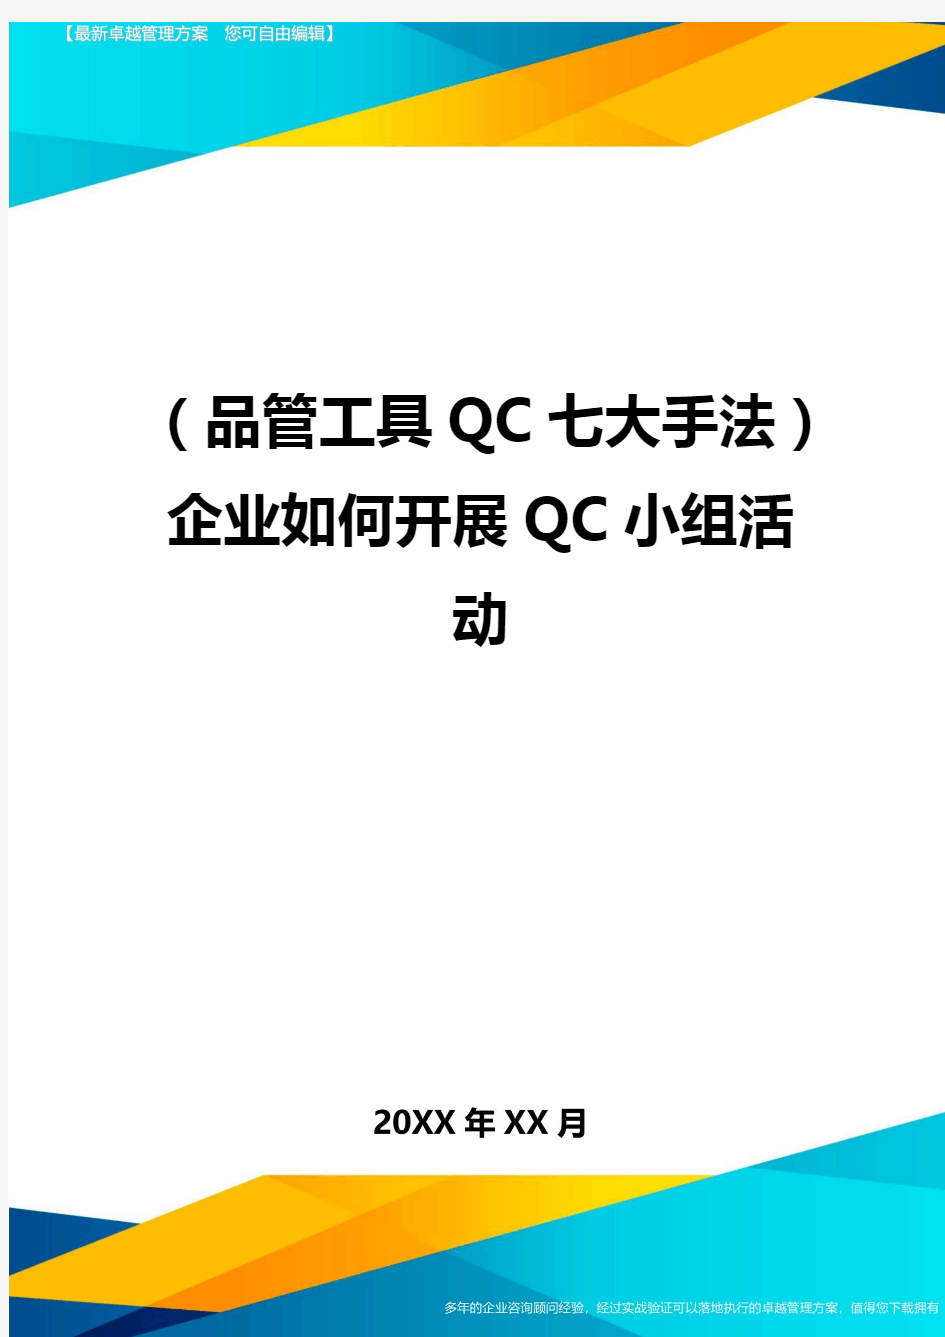 (品管工具QC七大手法)企业如何开展QC小组活动